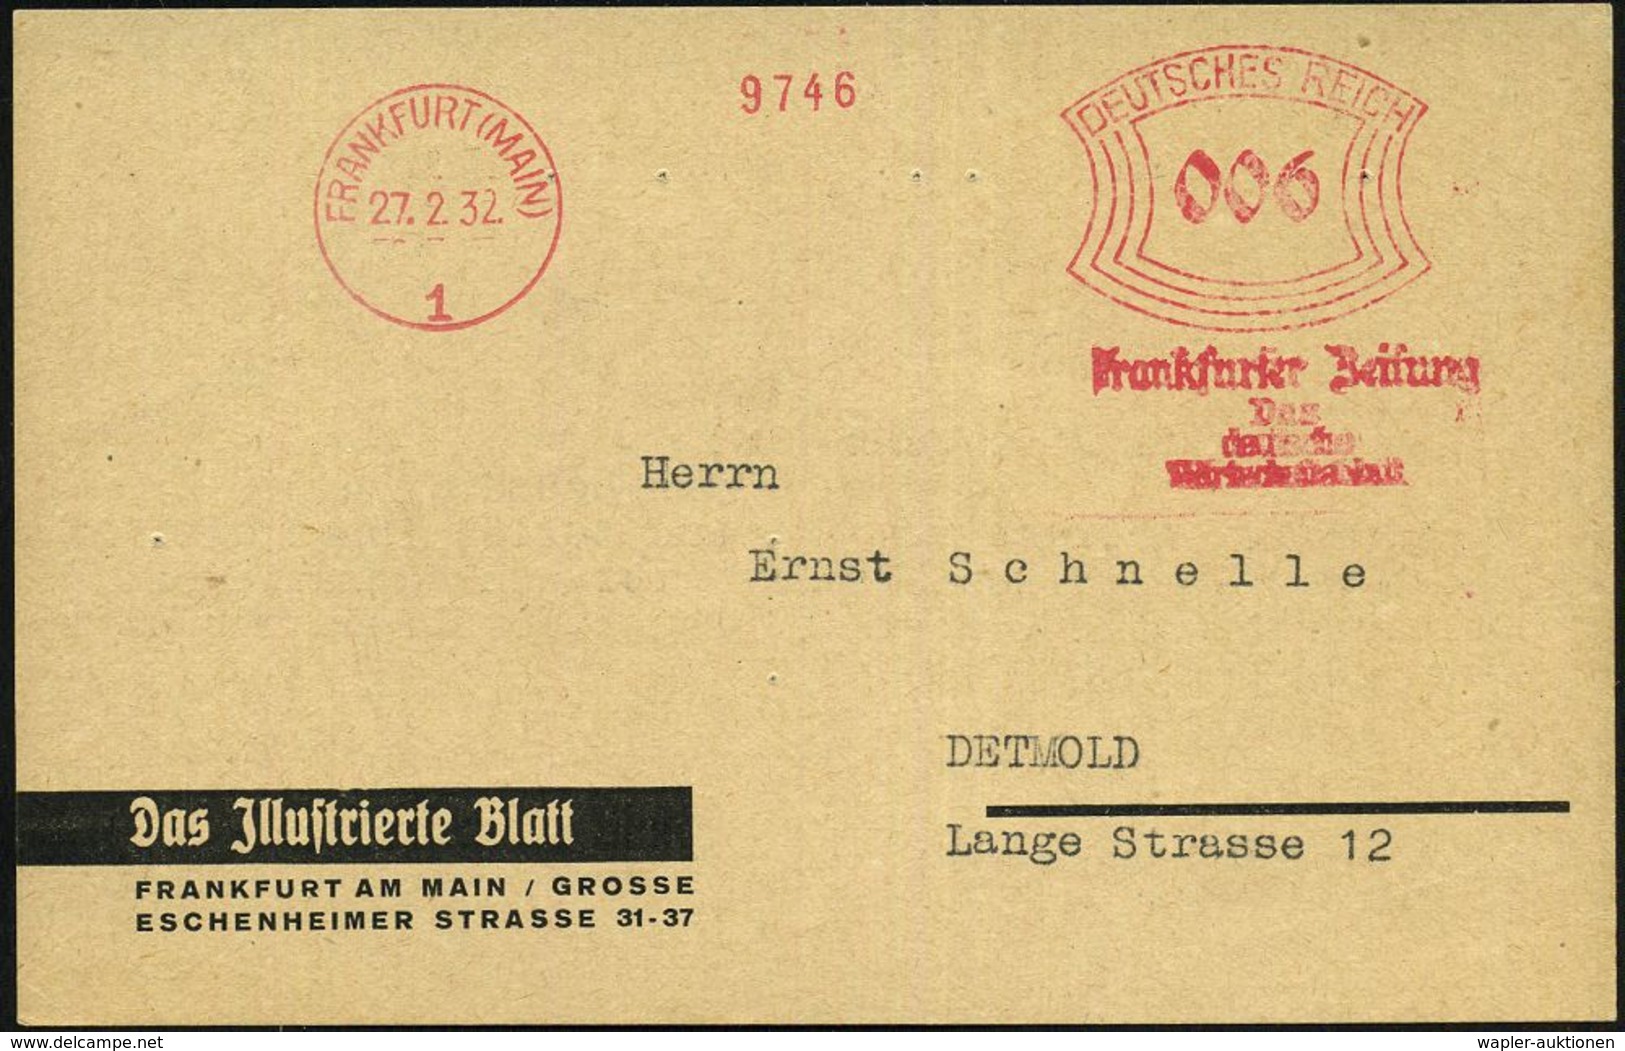 FRANKFURT (MAIN)/ 1/ Frankfurter Zeitung/ Das/ Deutsche/ Wirtschaftsblatt 1932 (27.2.) AFS (abgenutzte Maschine) Auf Fir - Non Classés